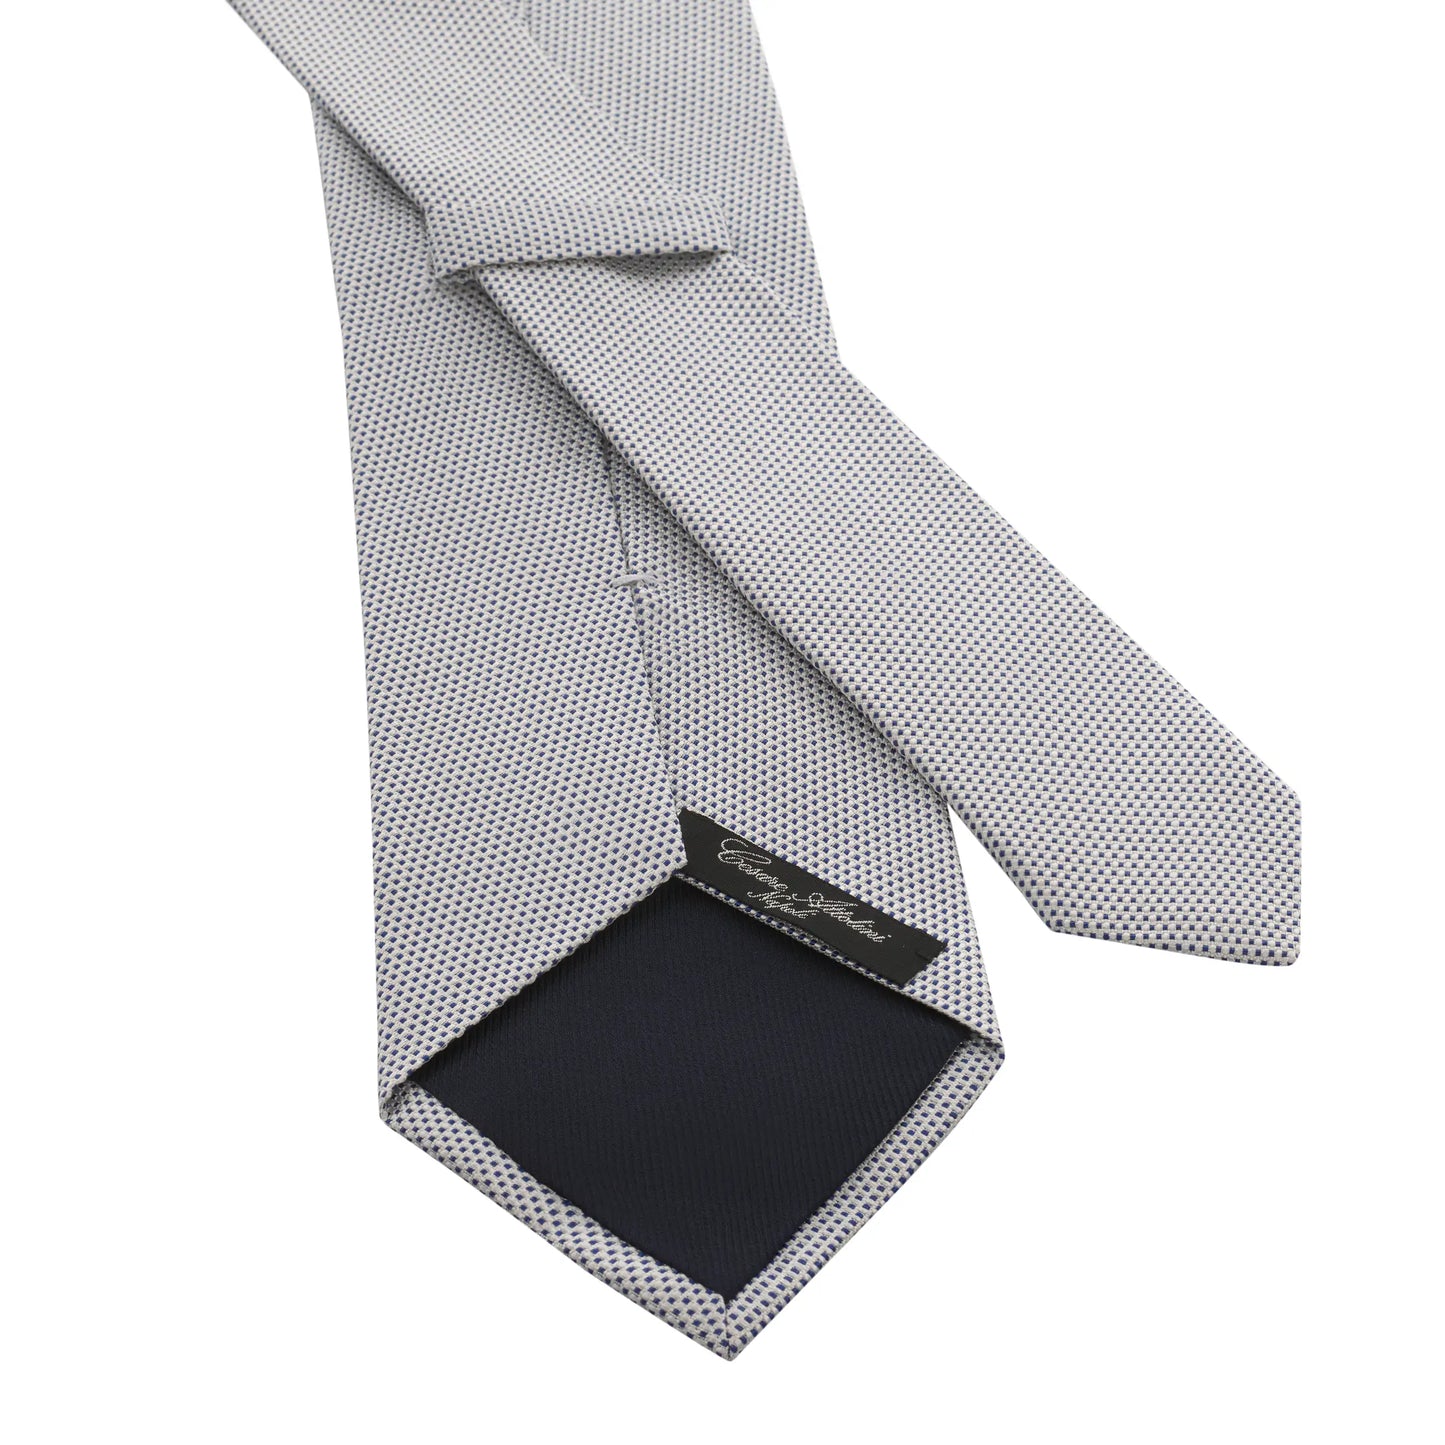 Jacquard-Silk Tie in White